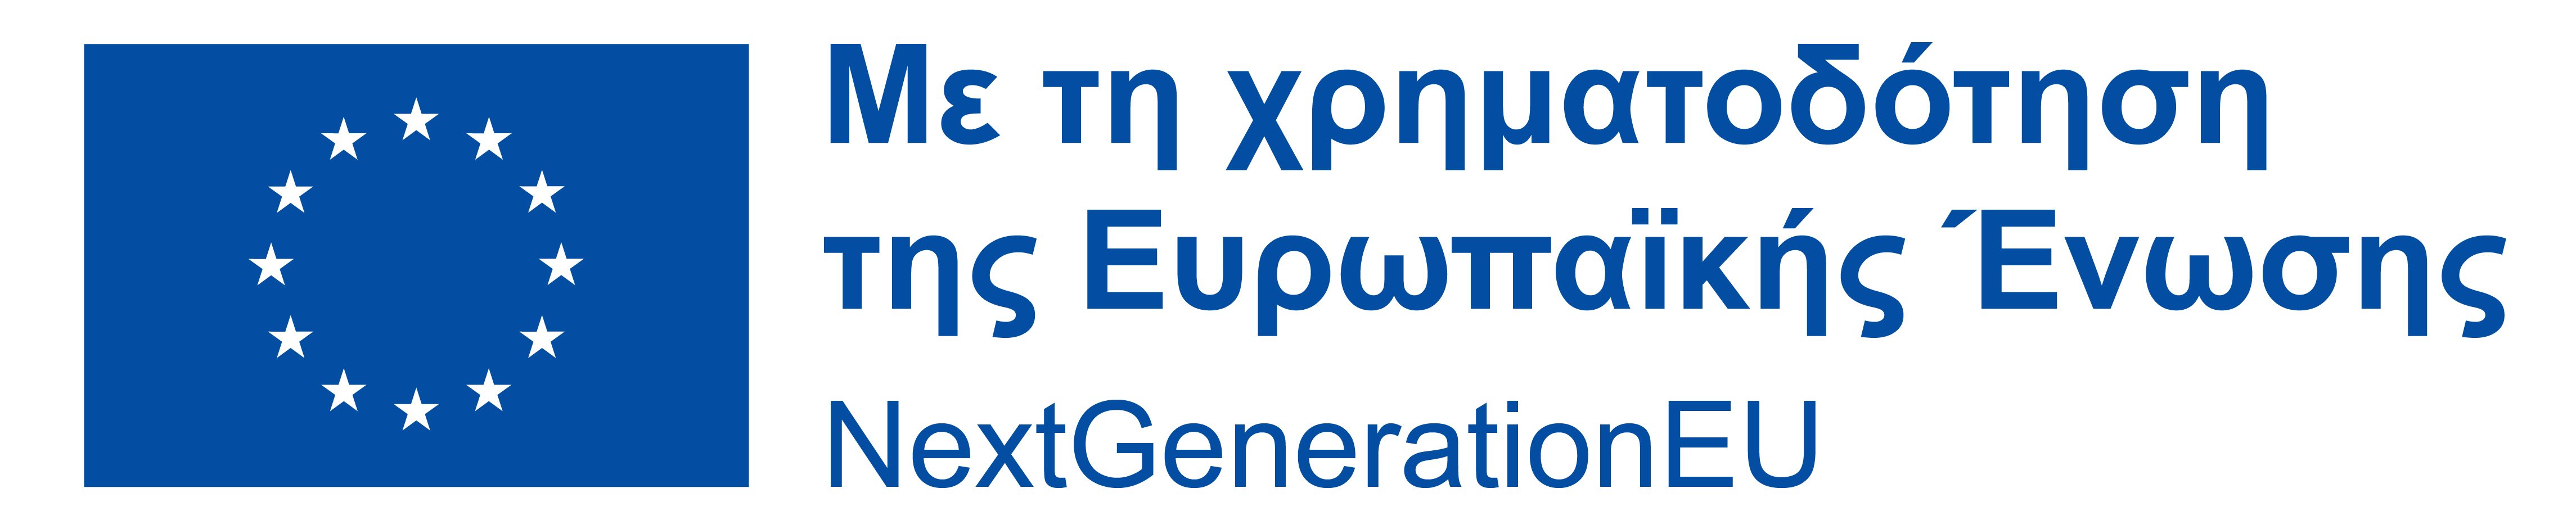 Next generation eu logo